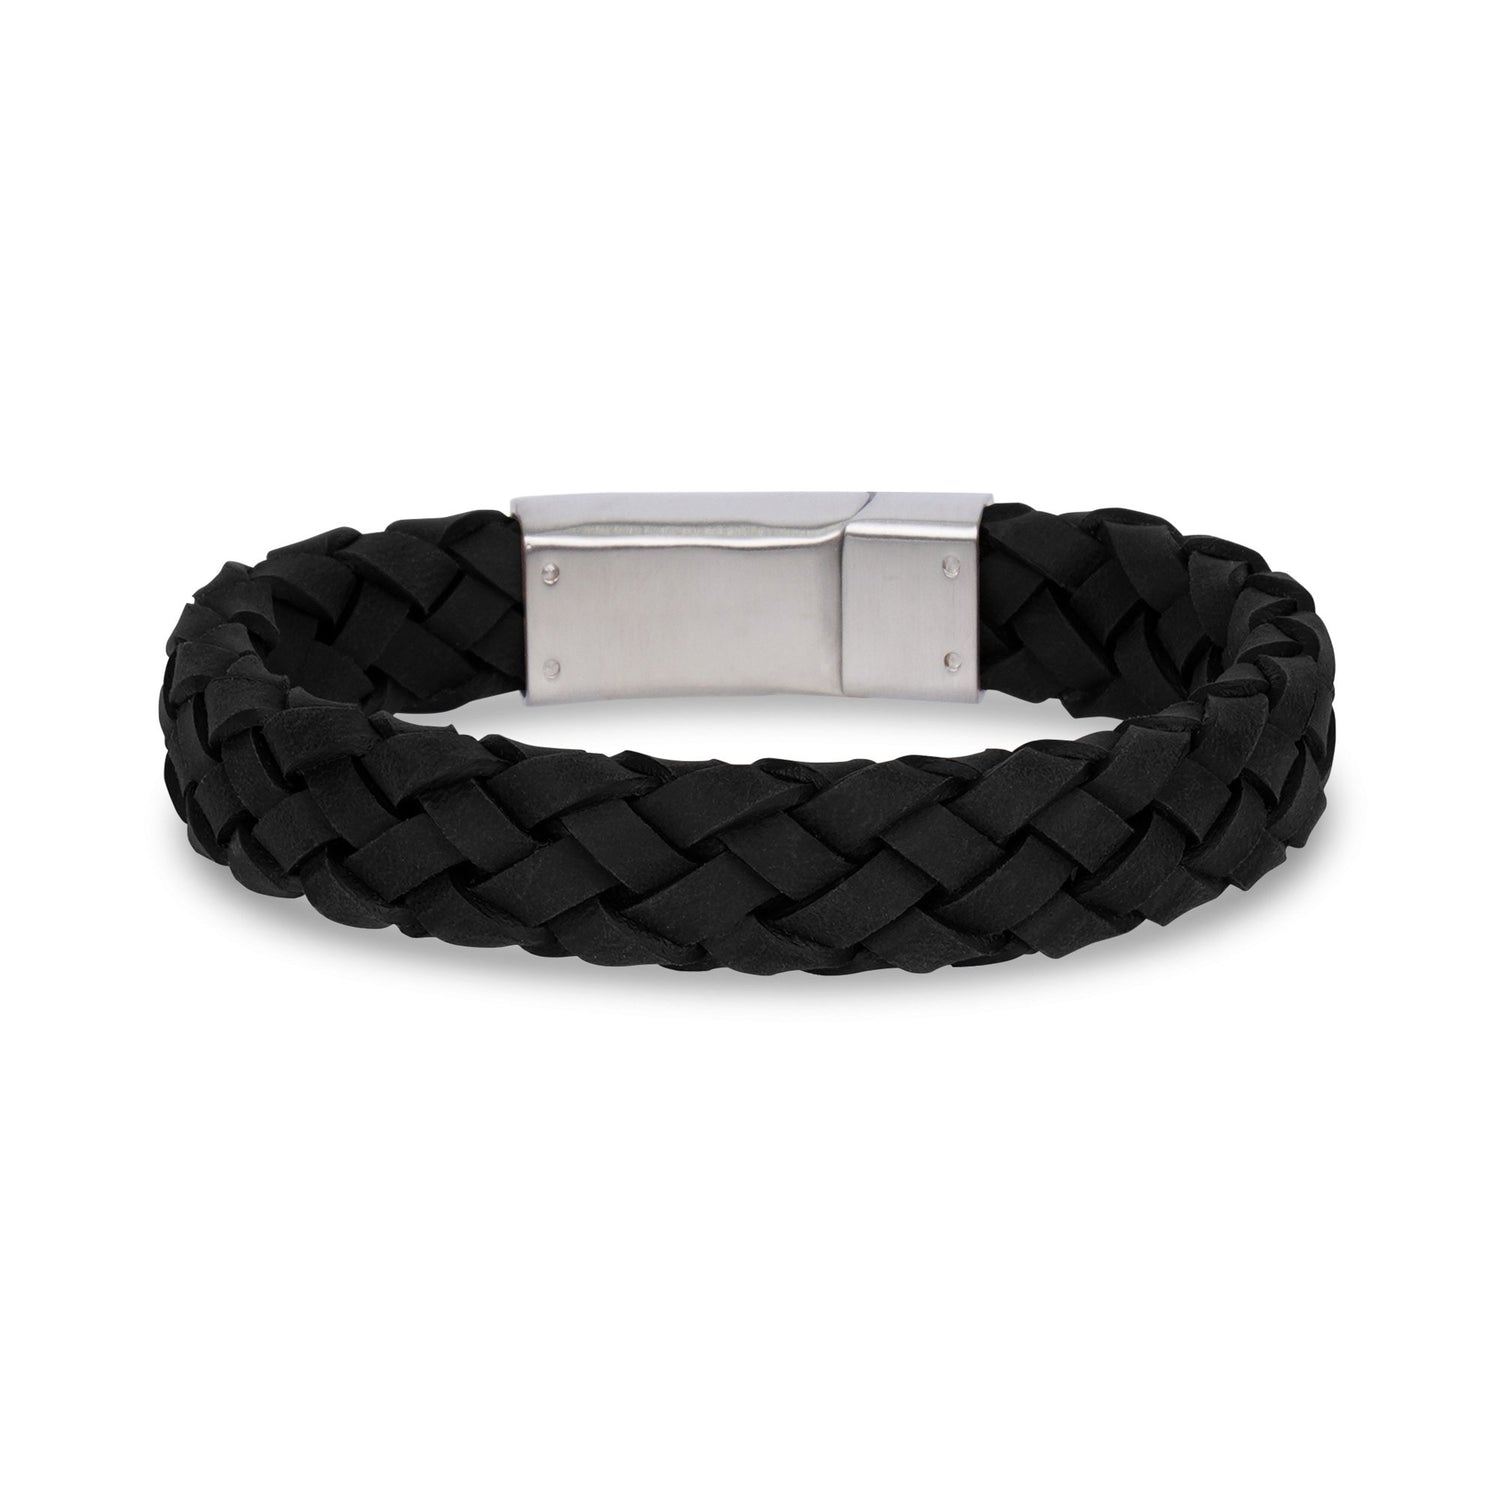 Wide Italian Black Leather Bracelets for Men - Engraved Gift for Men ...